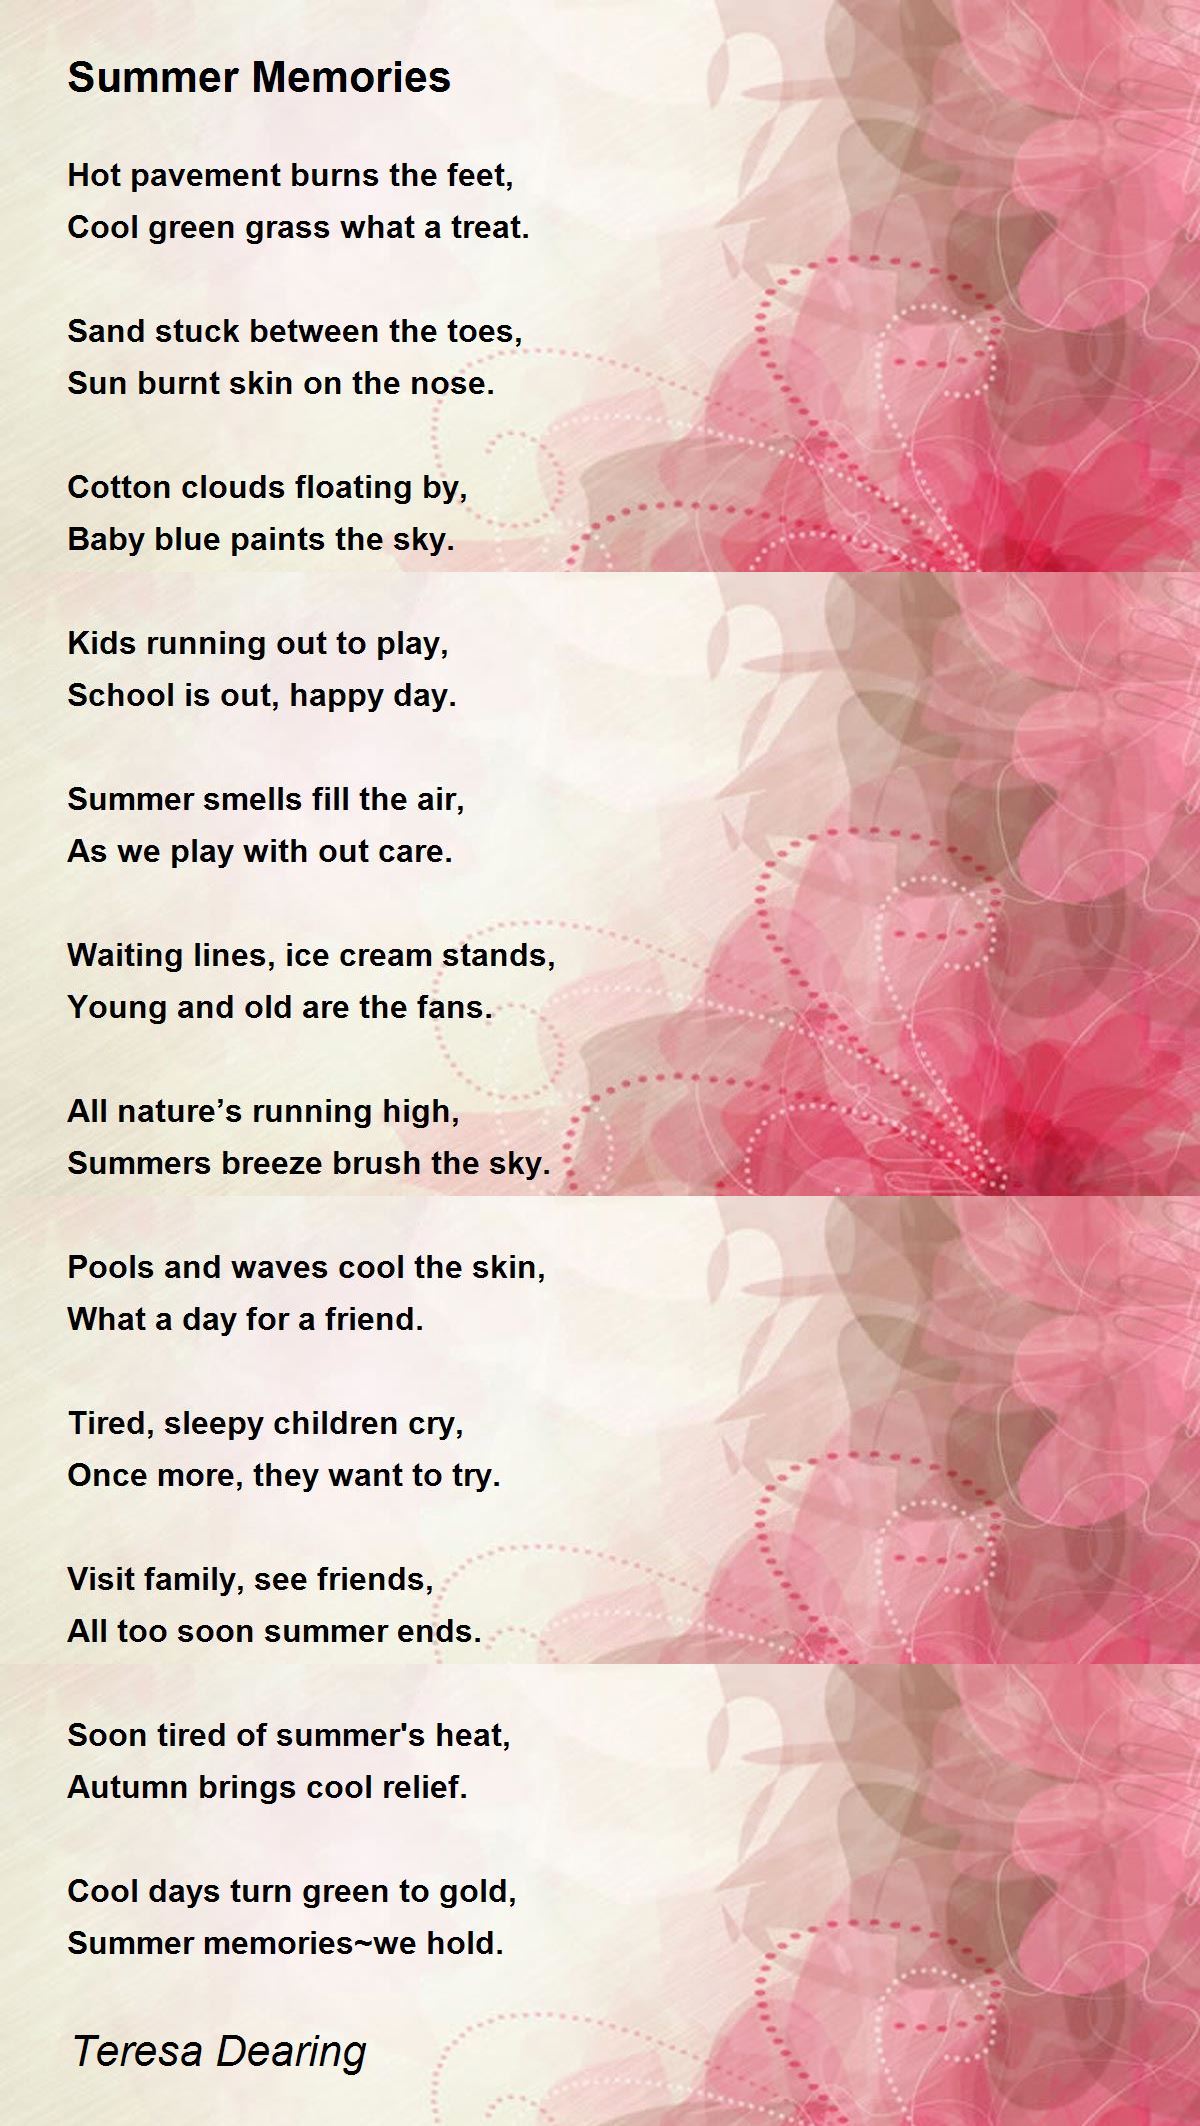 Summer Memories - Summer Memories Poem by Teresa Dearing